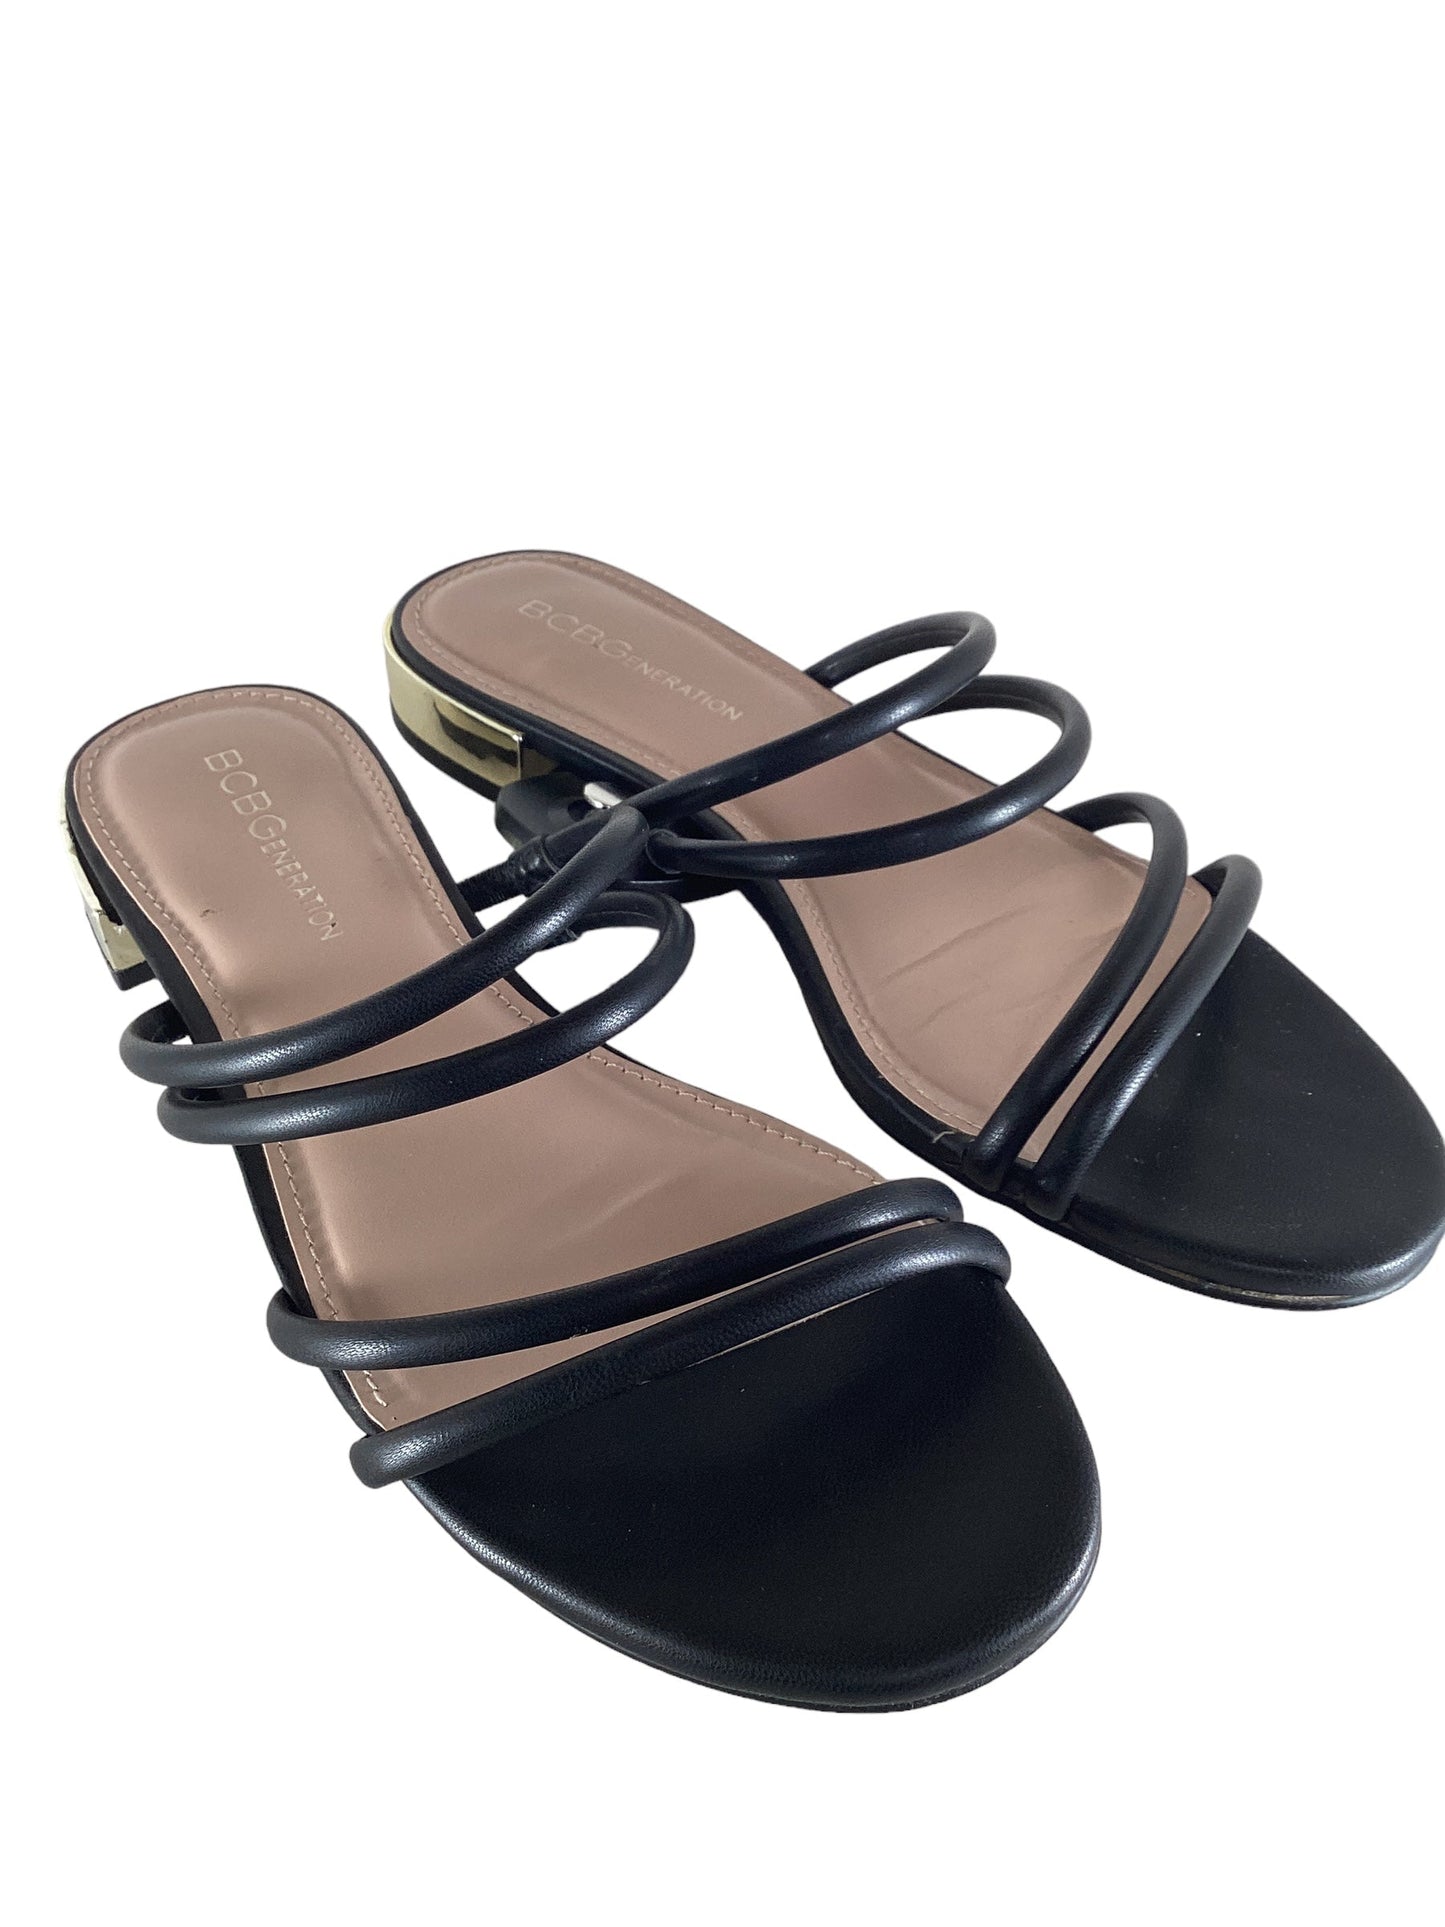 Black Sandals Flats Bcbg, Size 7